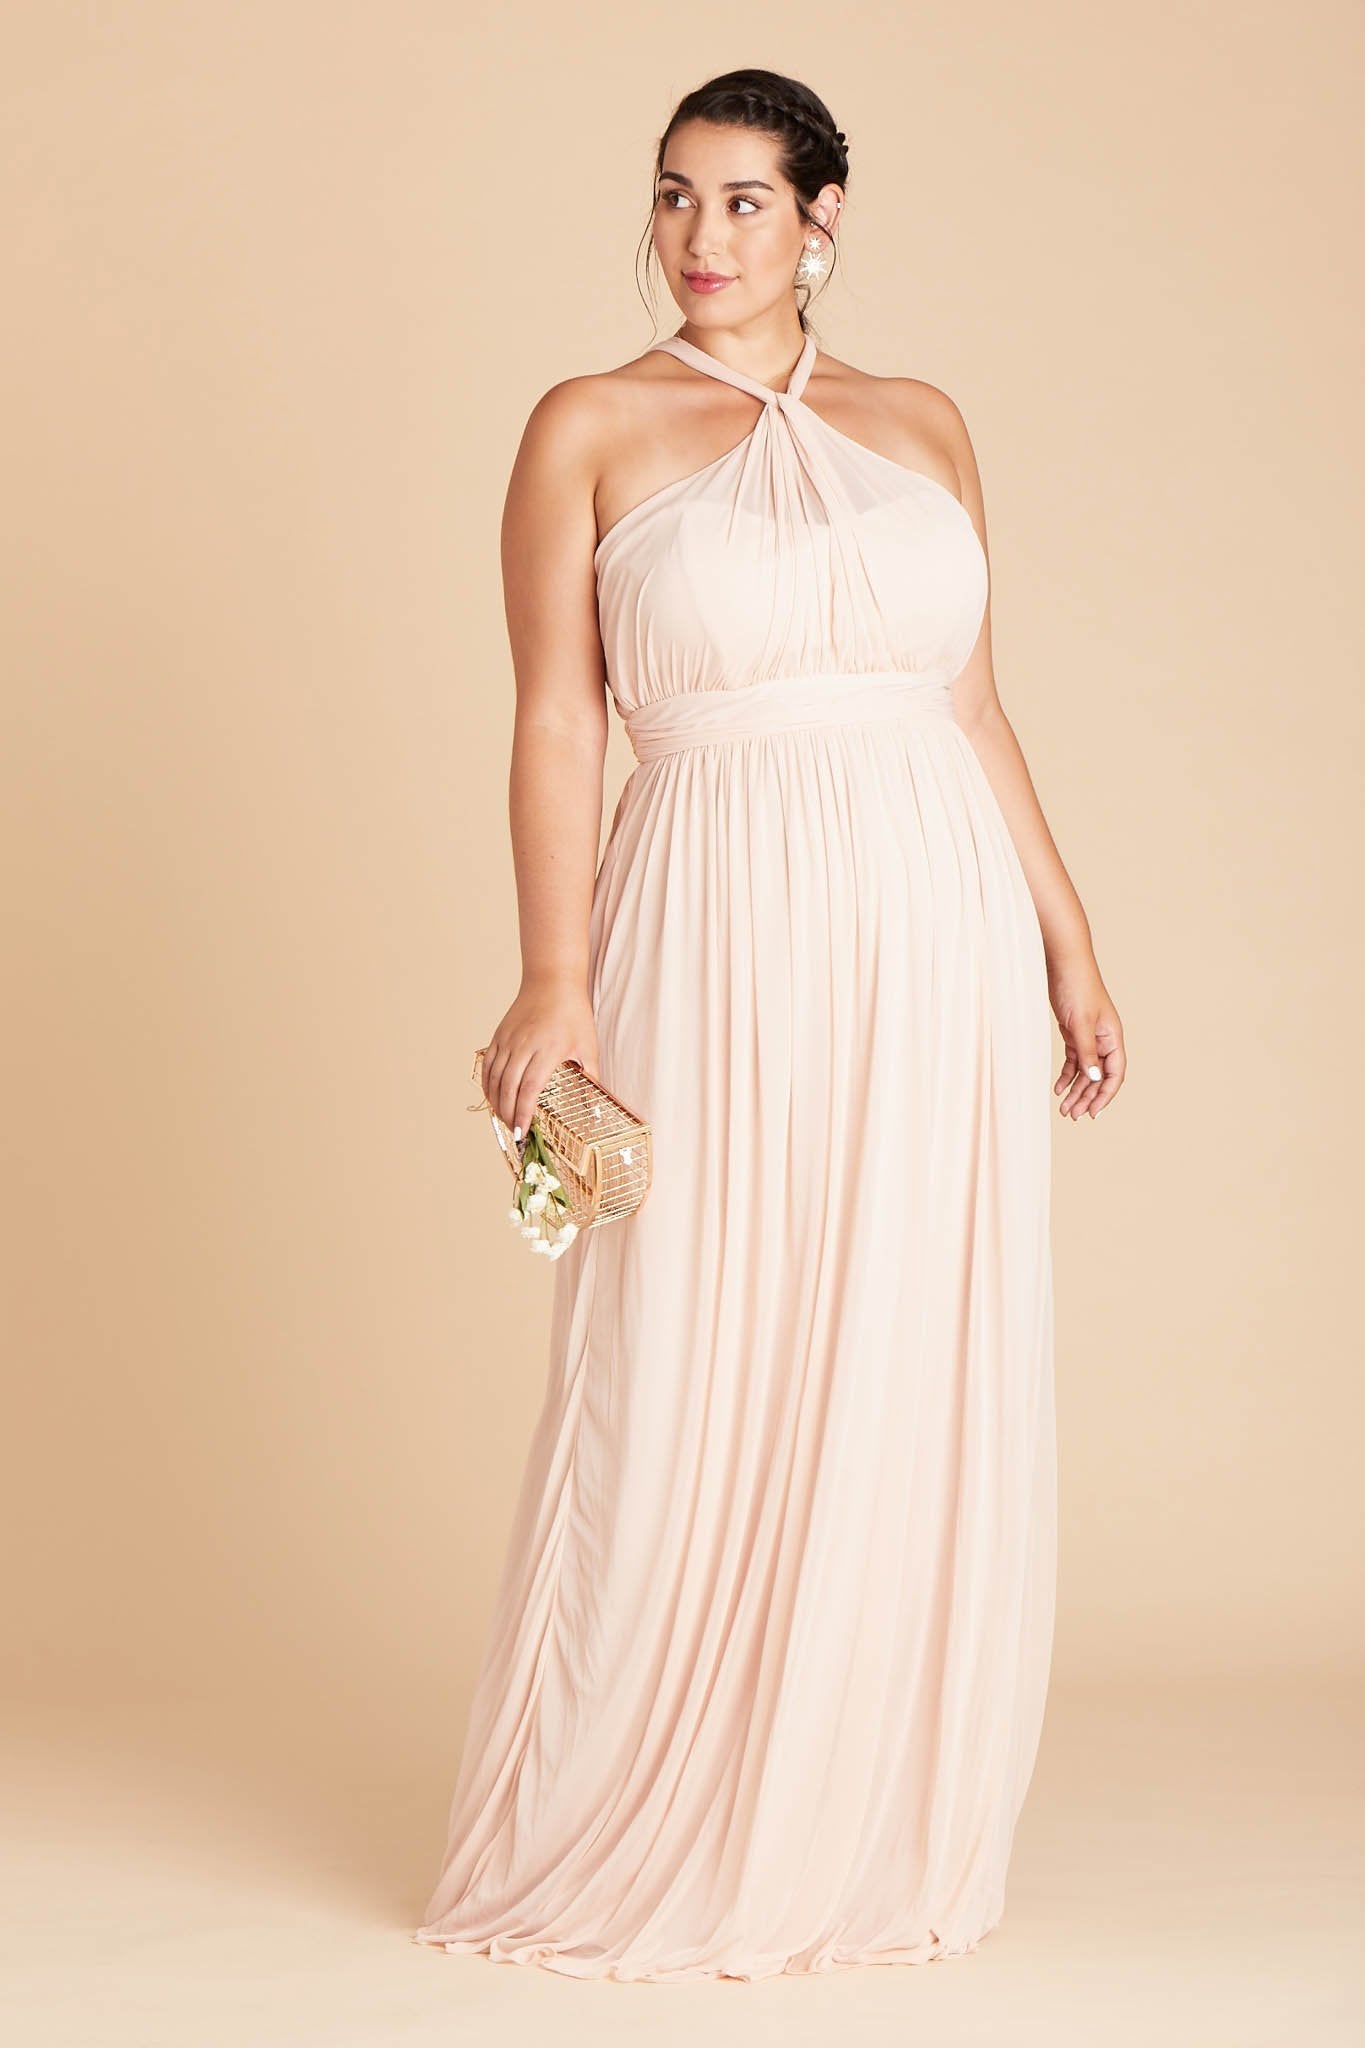 Kiko plus size bridesmaid dress in pale blush chiffon by Birdy Grey, front view